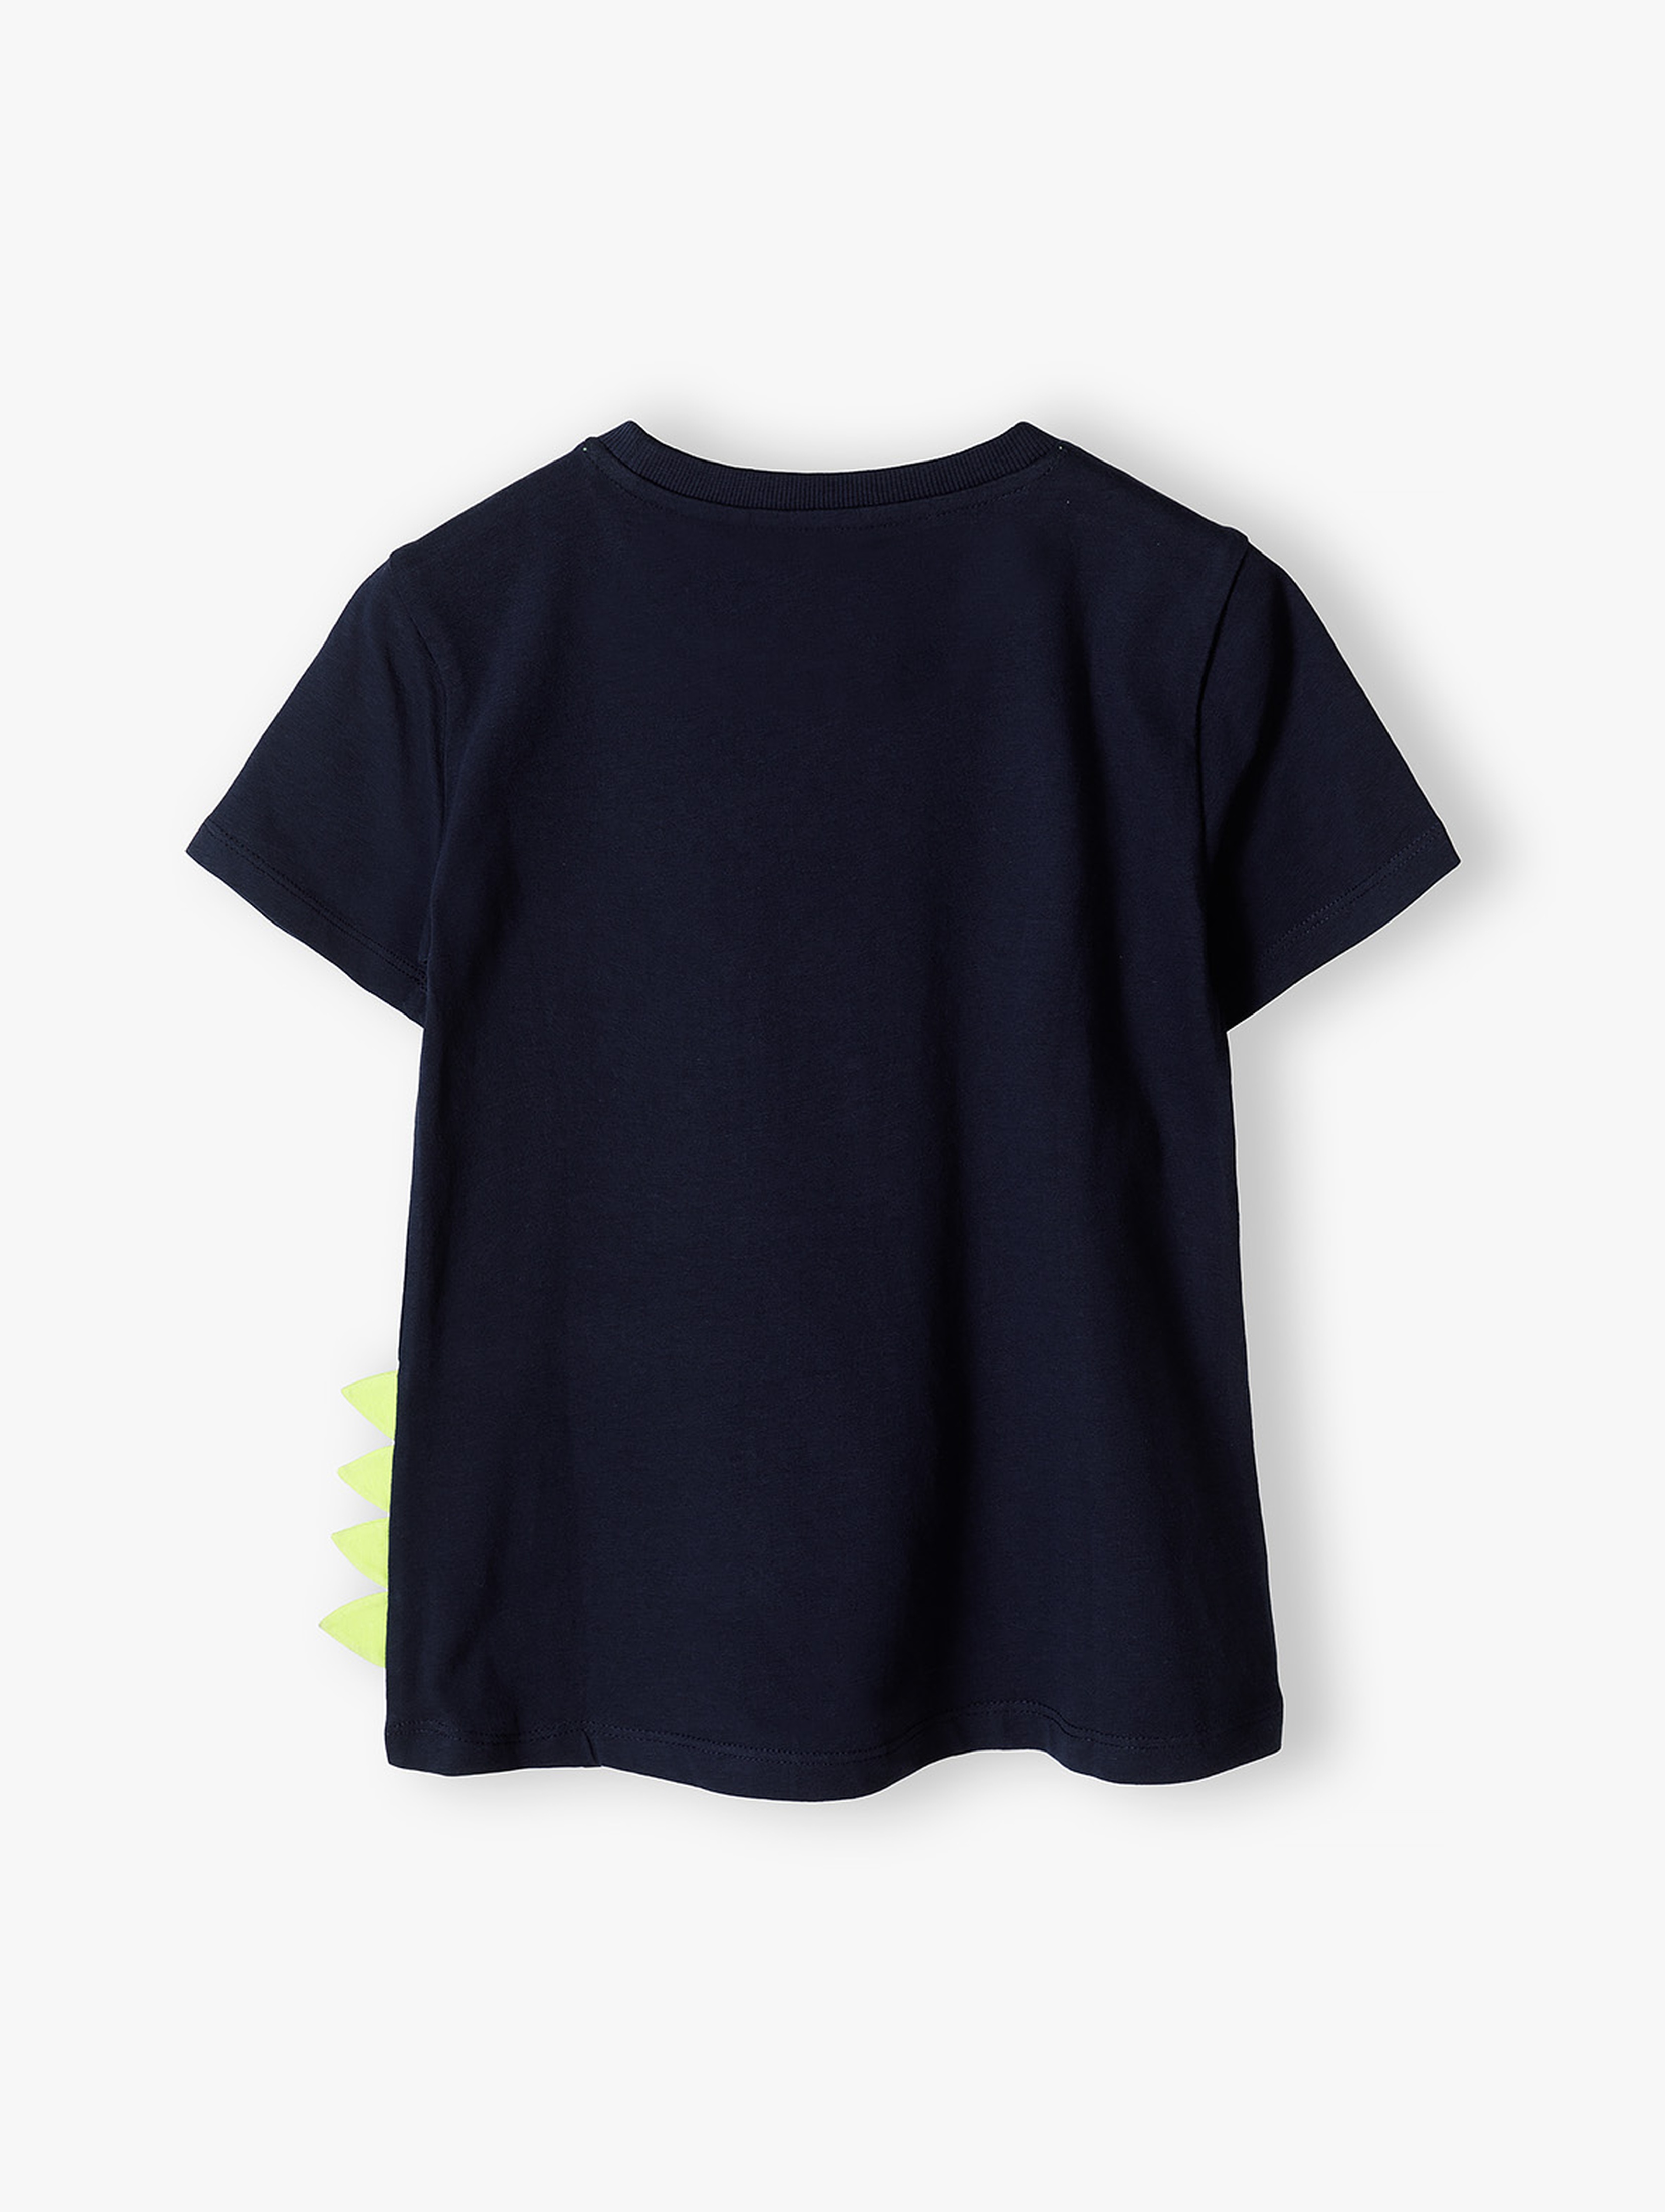 Granatowy t-shirt bawełniany dla chłopca z dinozaurem i detalem 3D